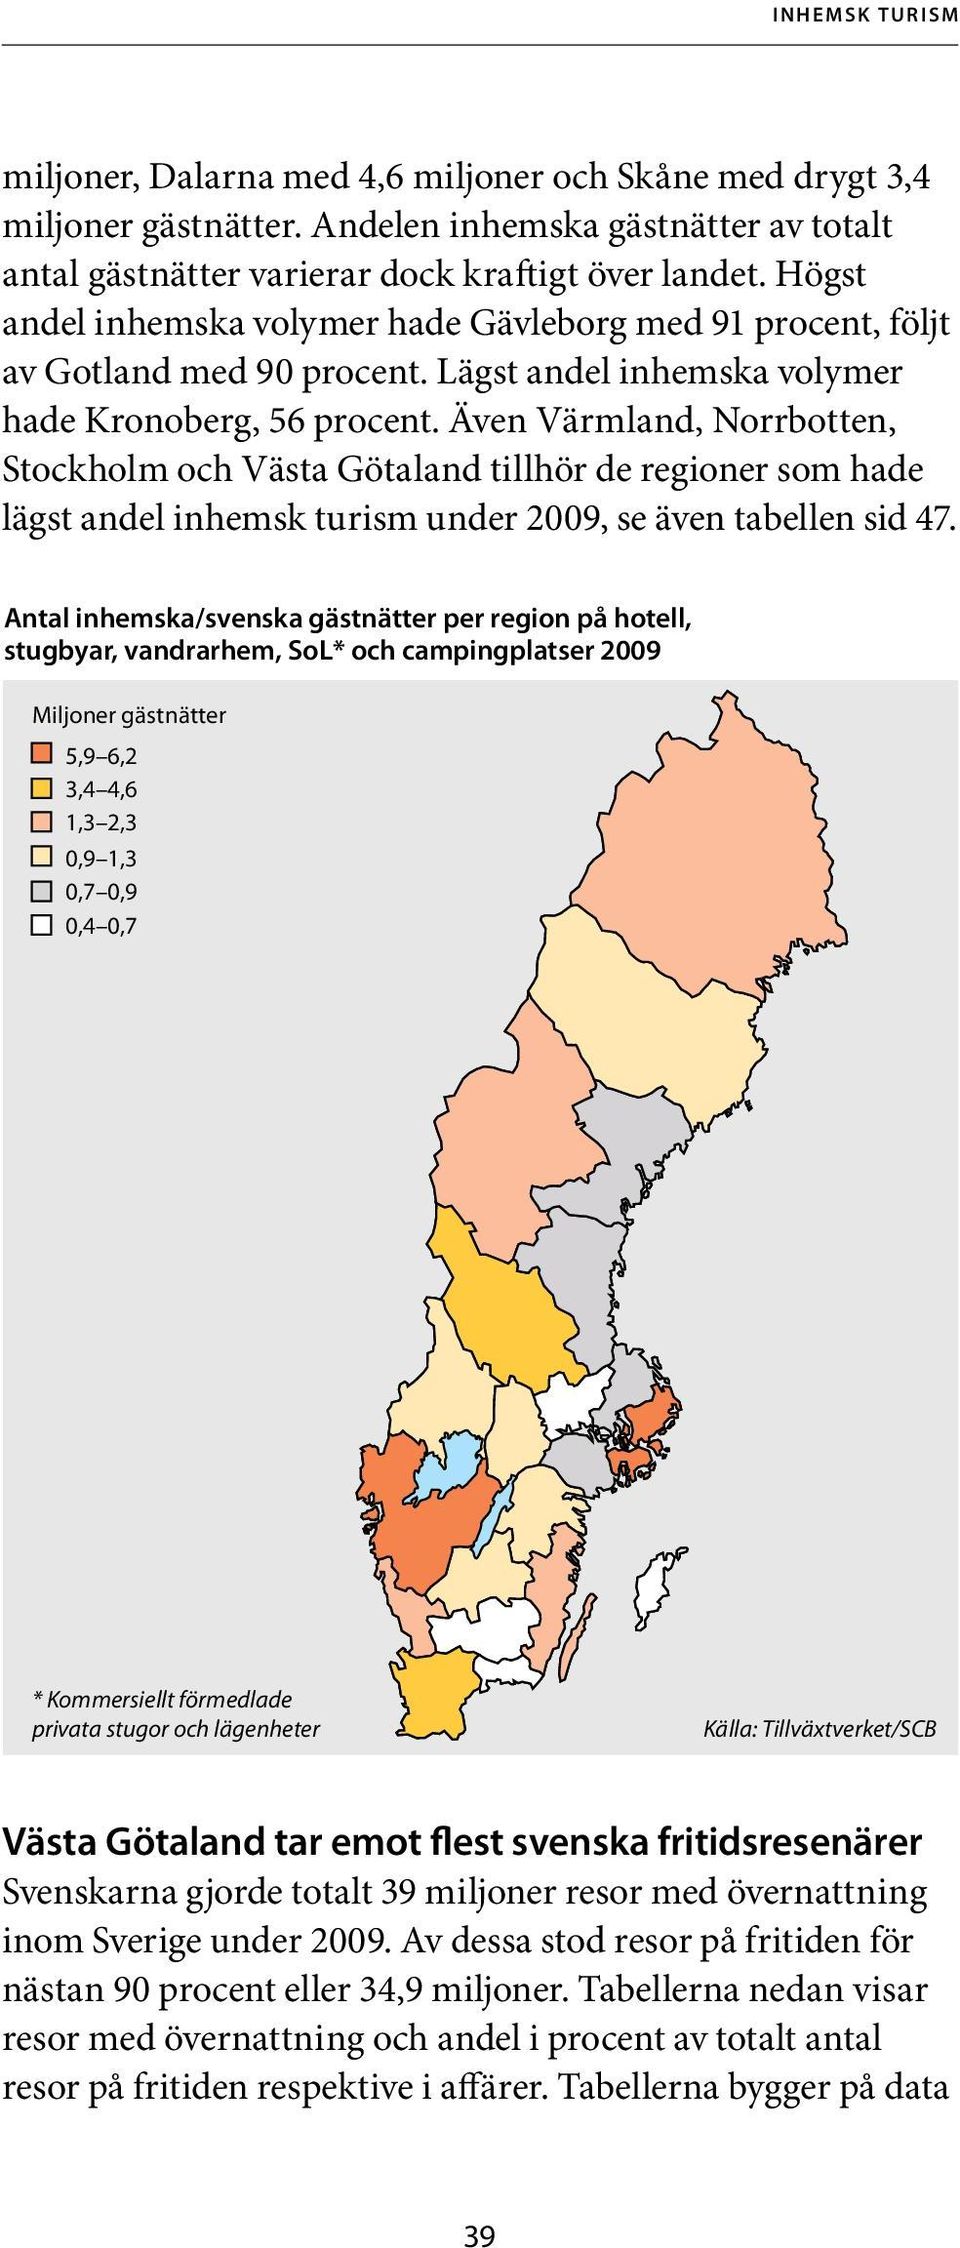 Även Värmland, Norrbotten, Stockholm och Västa Götaland tillhör de regioner som hade lägst andel inhemsk turism under 2009, se även tabellen sid 47.